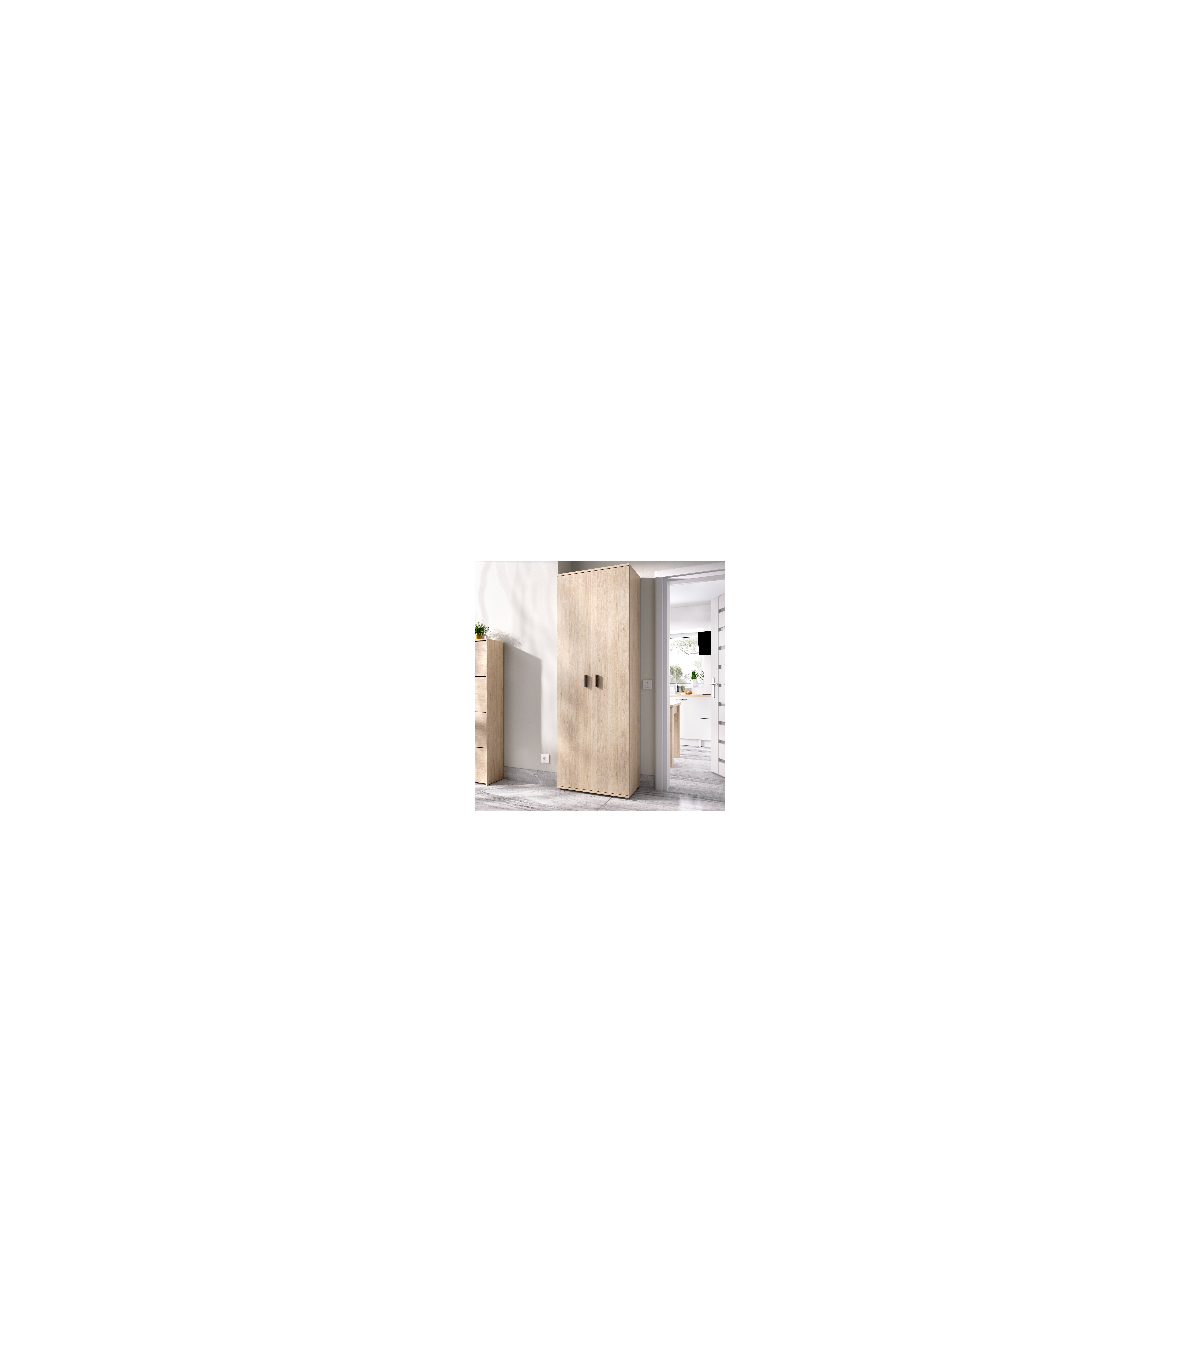 Armario bajo dos puertas Marsella color blanco 61 cm(ancho) 80 cm(altura)  35 cm(fondo)